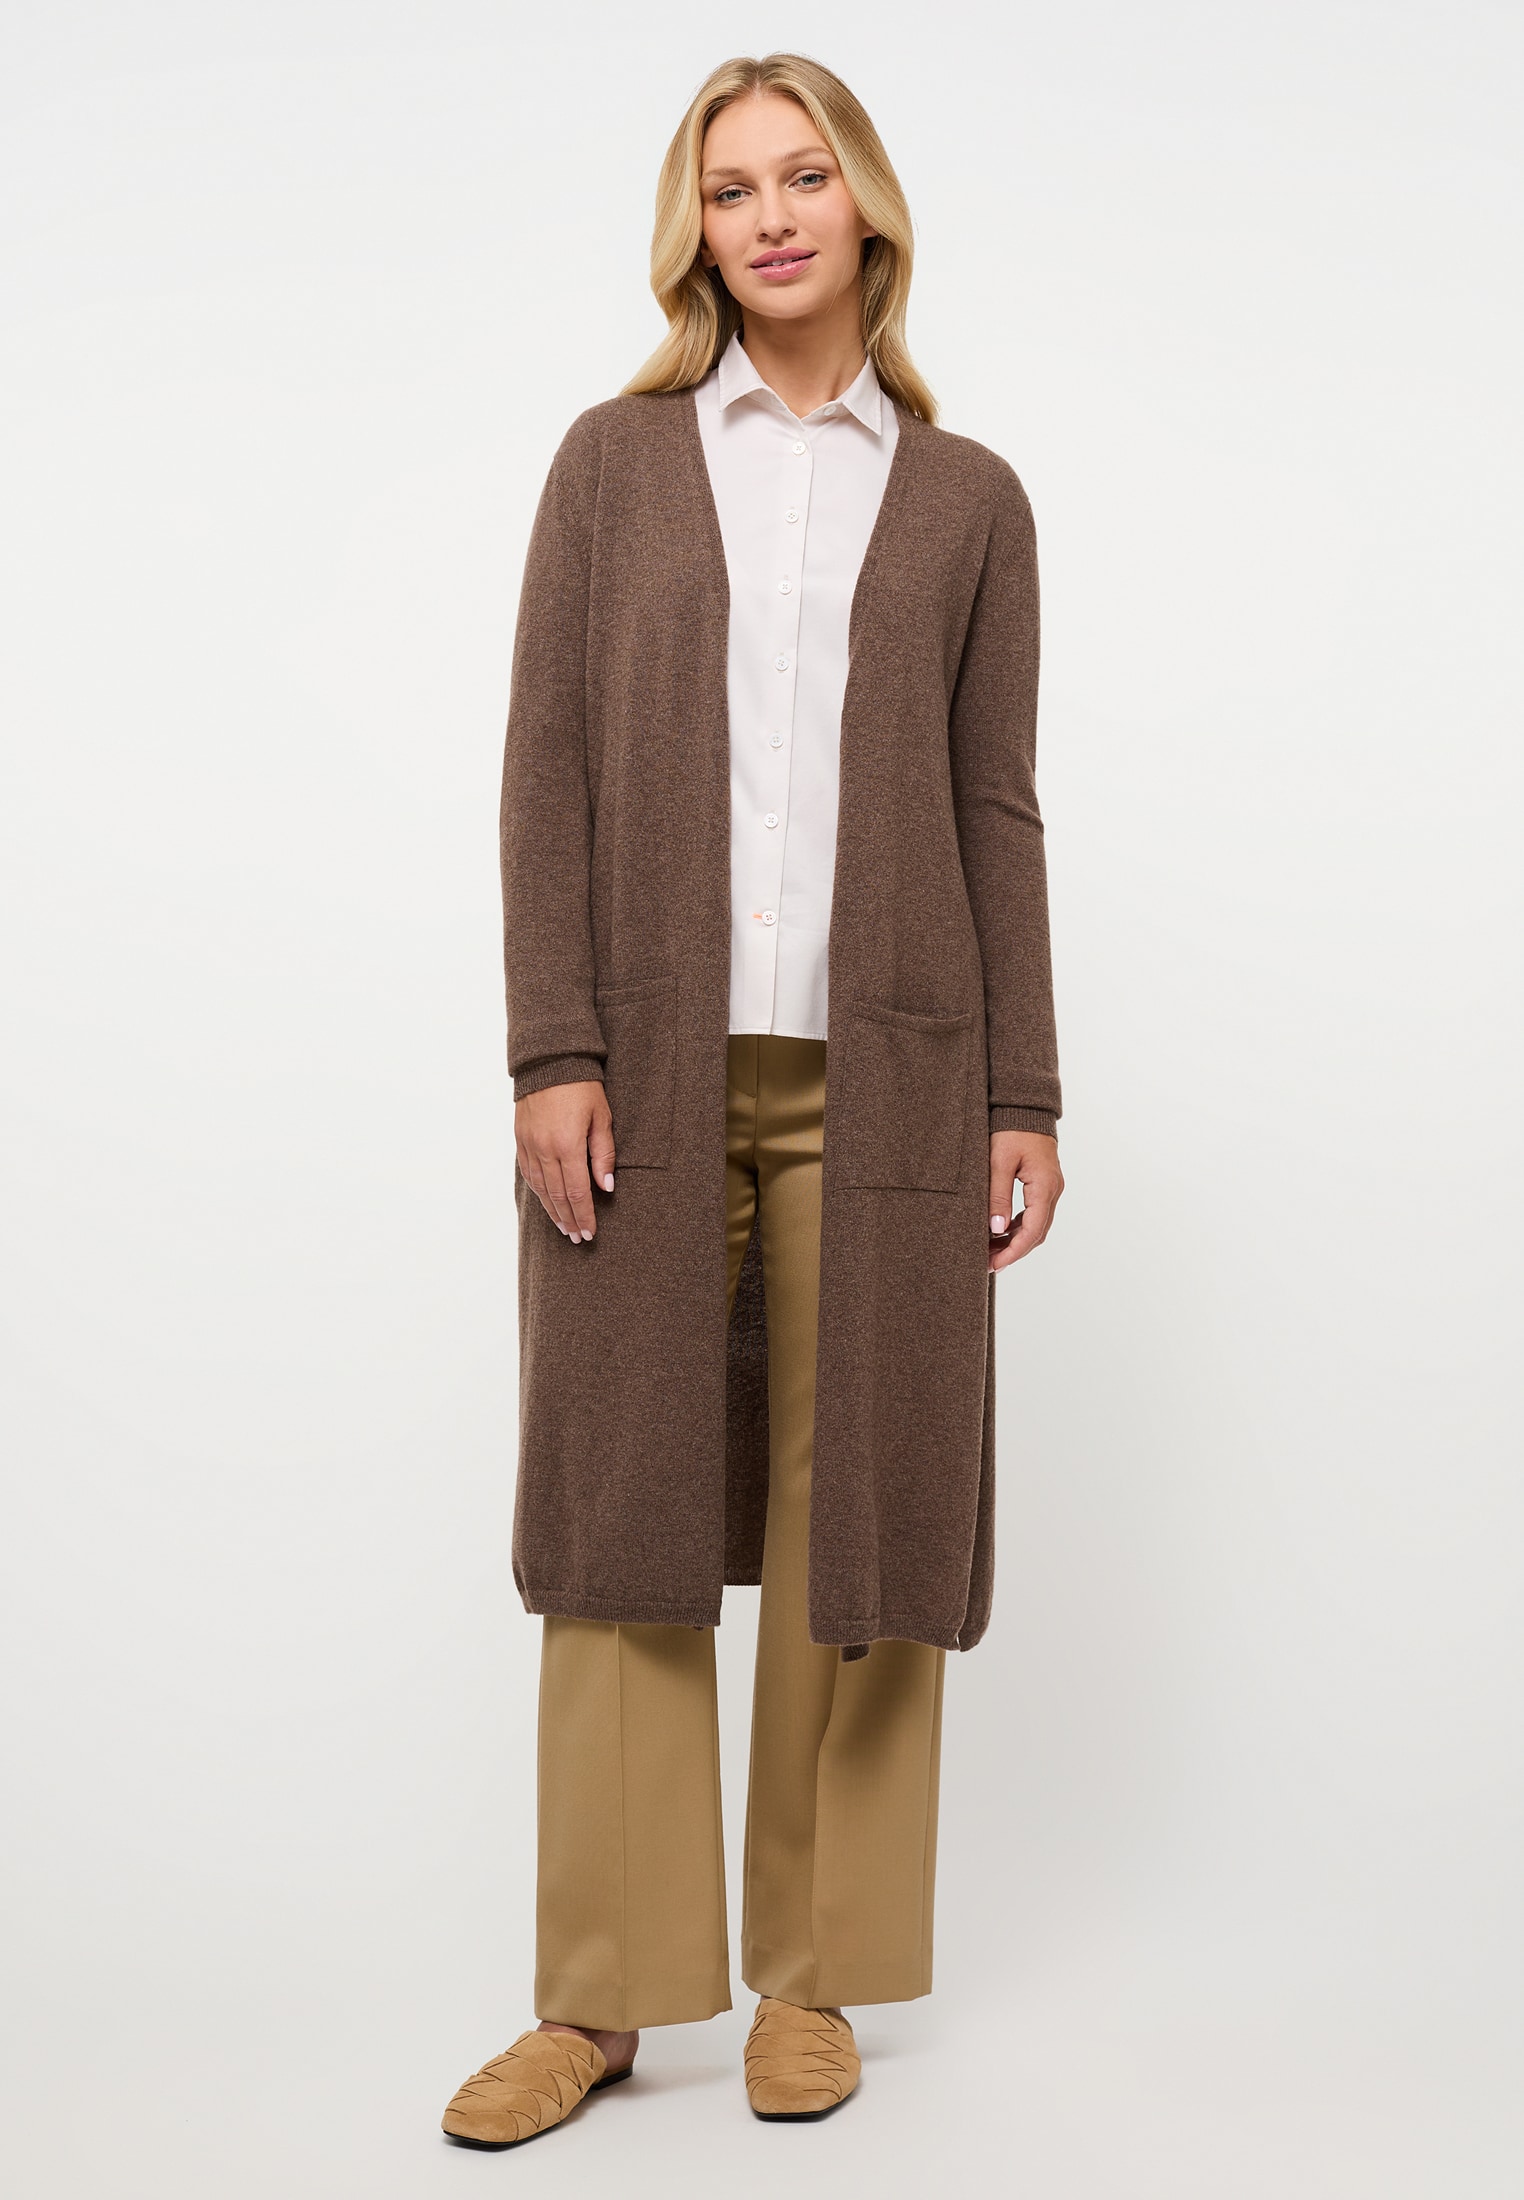 Knitted | brown plain in 2KN00093-02-92-2XL dark | cardigan brown | dark 2XL